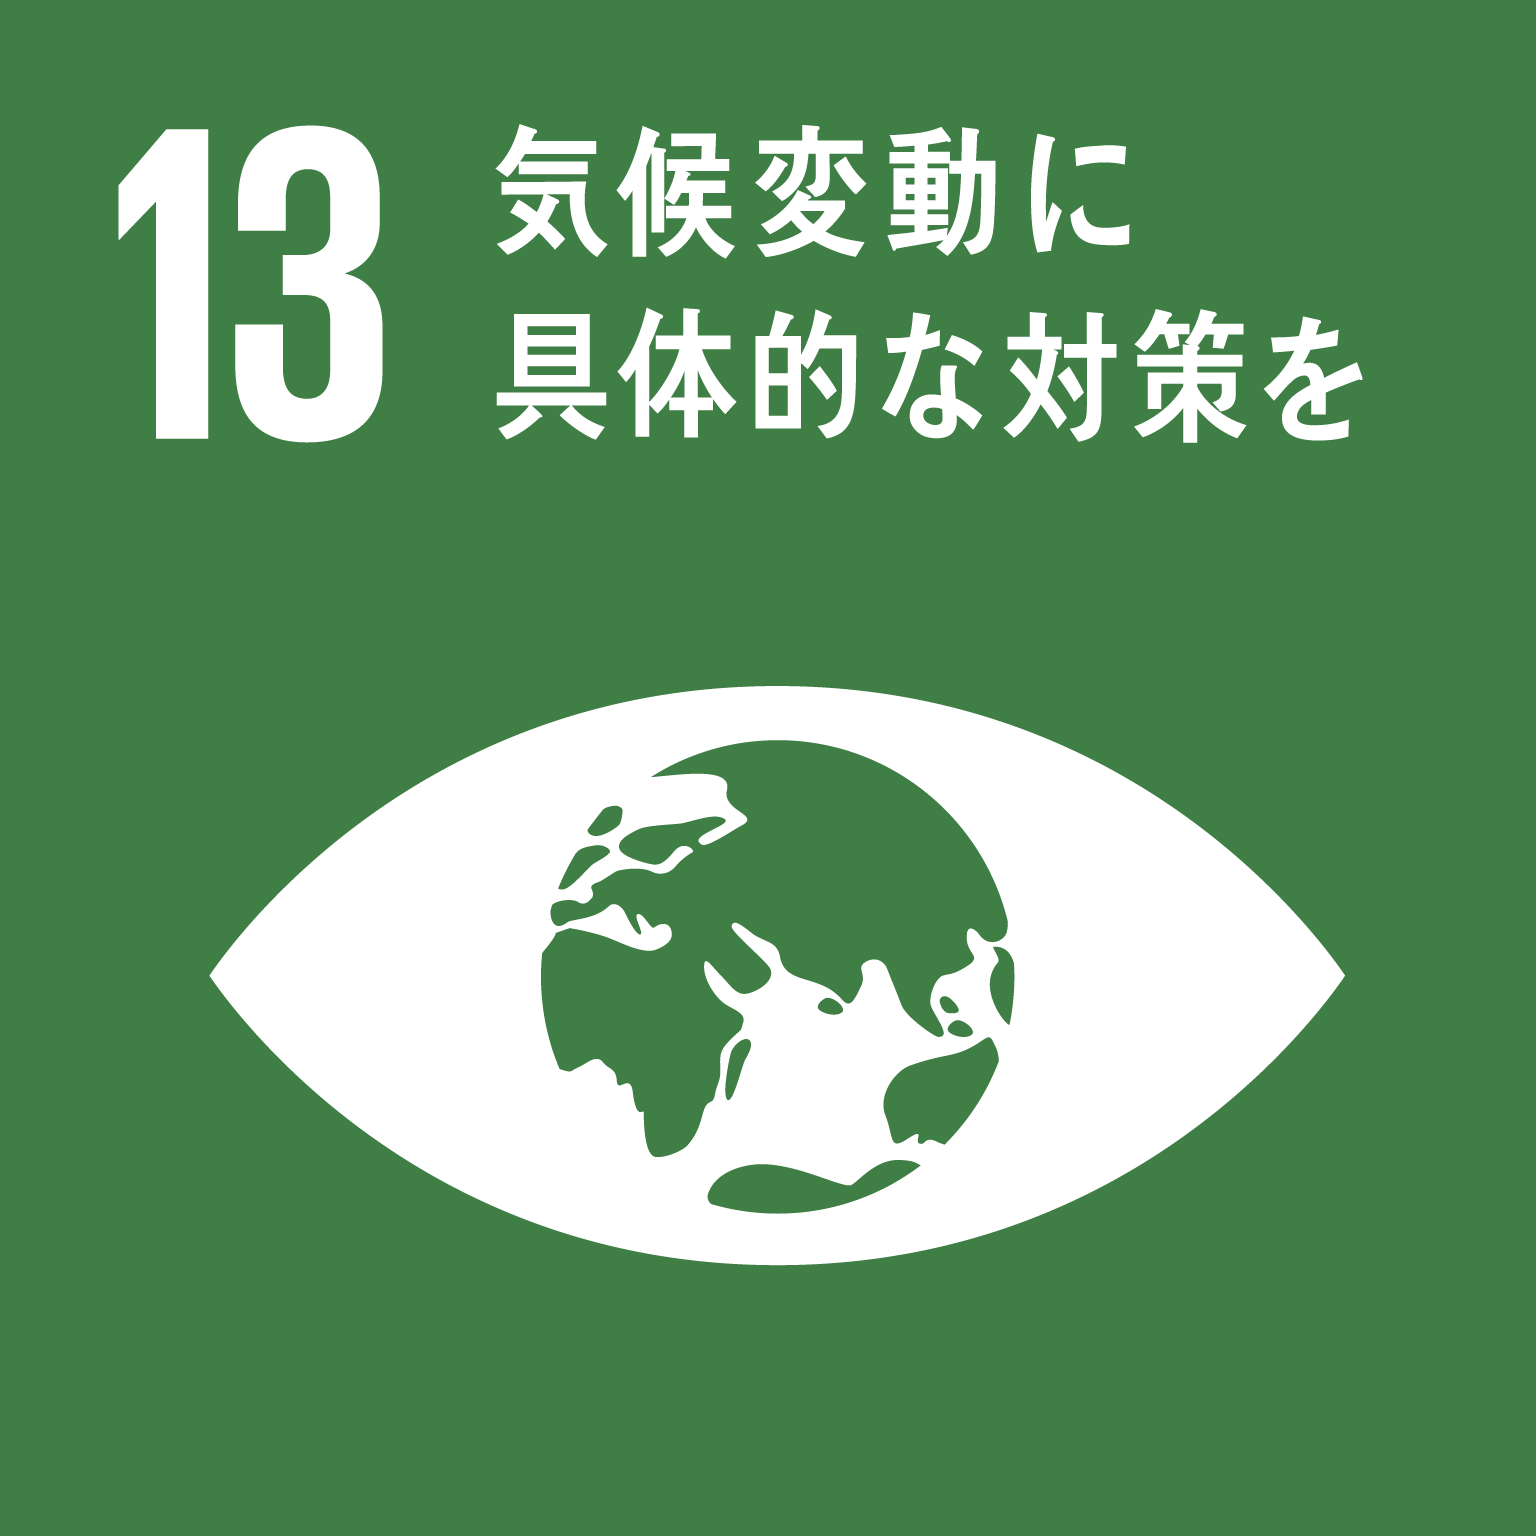 SDGs13